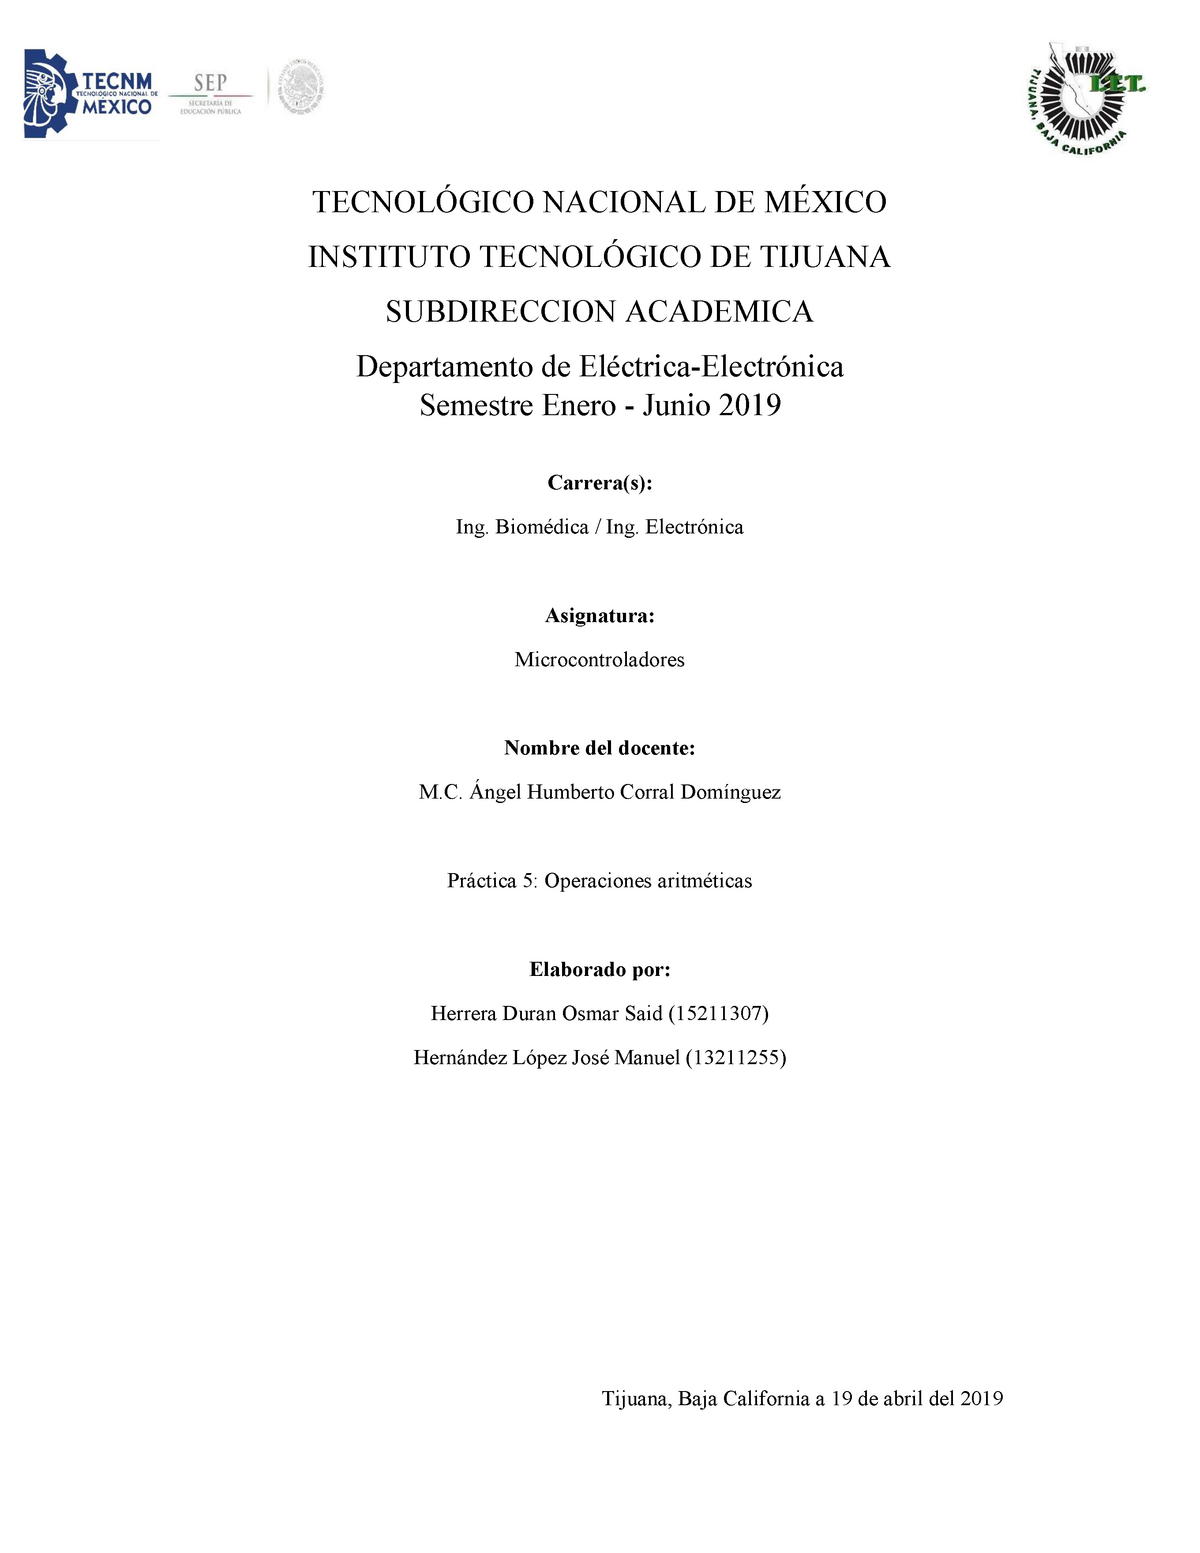 Microcontroladores-Práctica 5 - TECNOLÓGICO NACIONAL DE MÉXICO ...